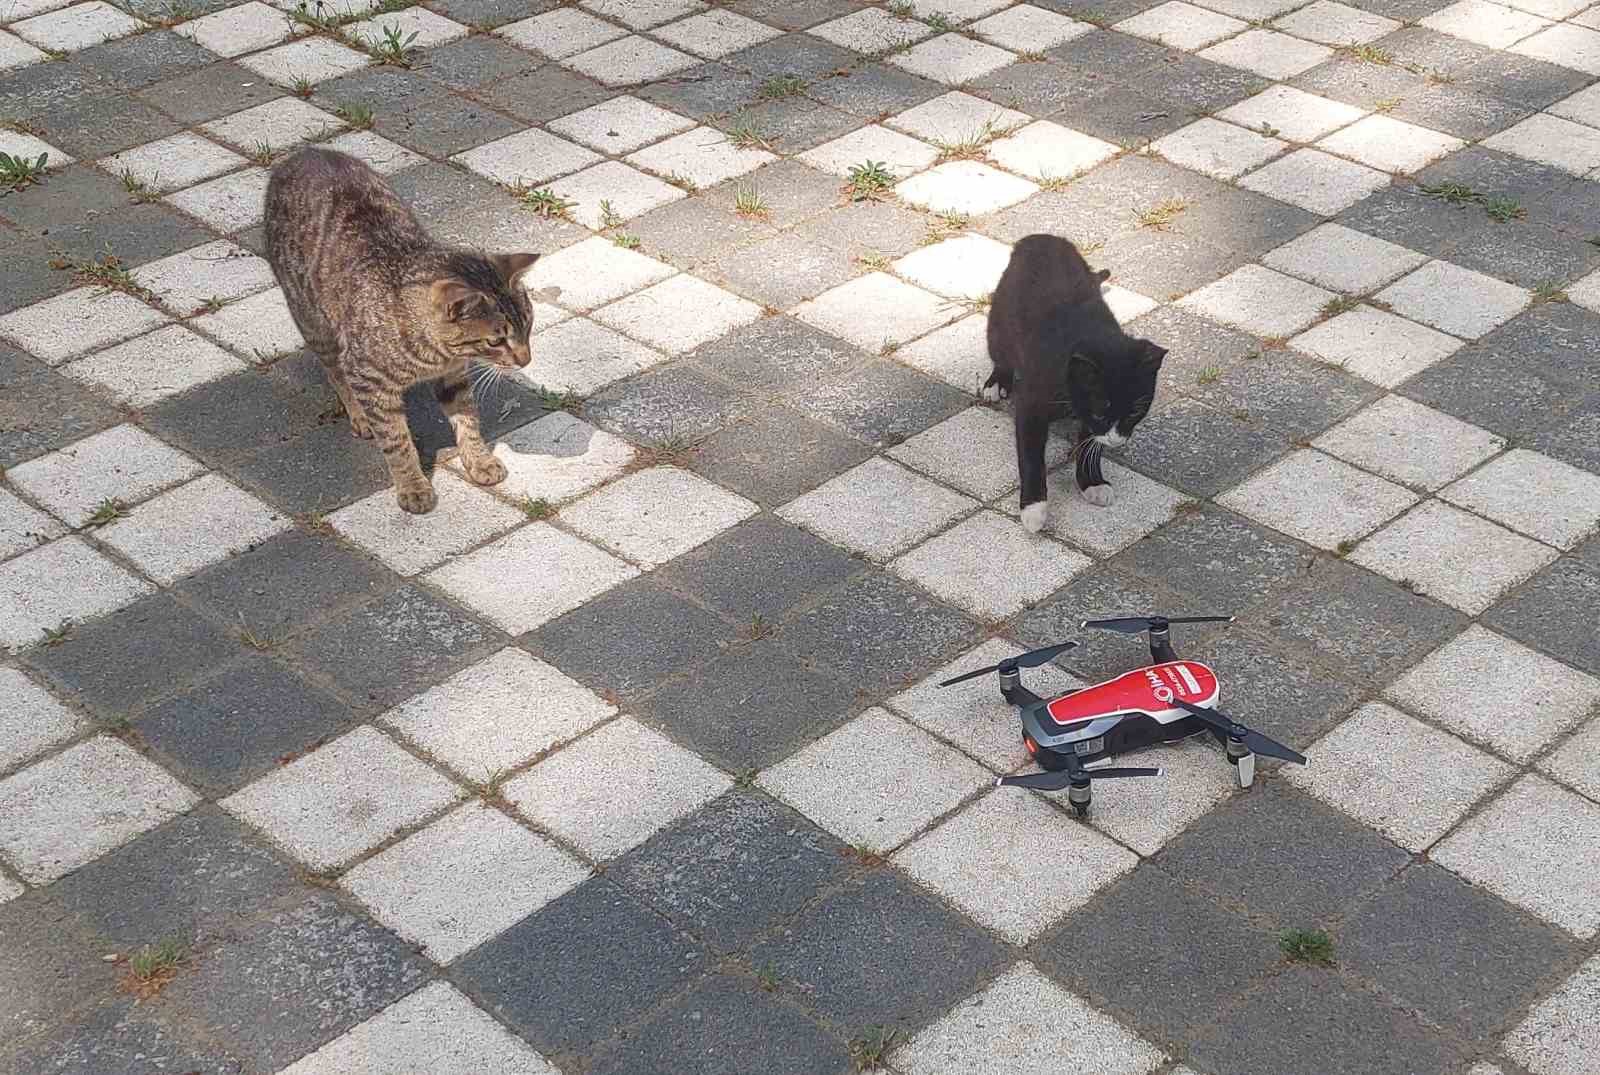 dron goren masum kediler gulumsetti 3 ihGk5Oy1